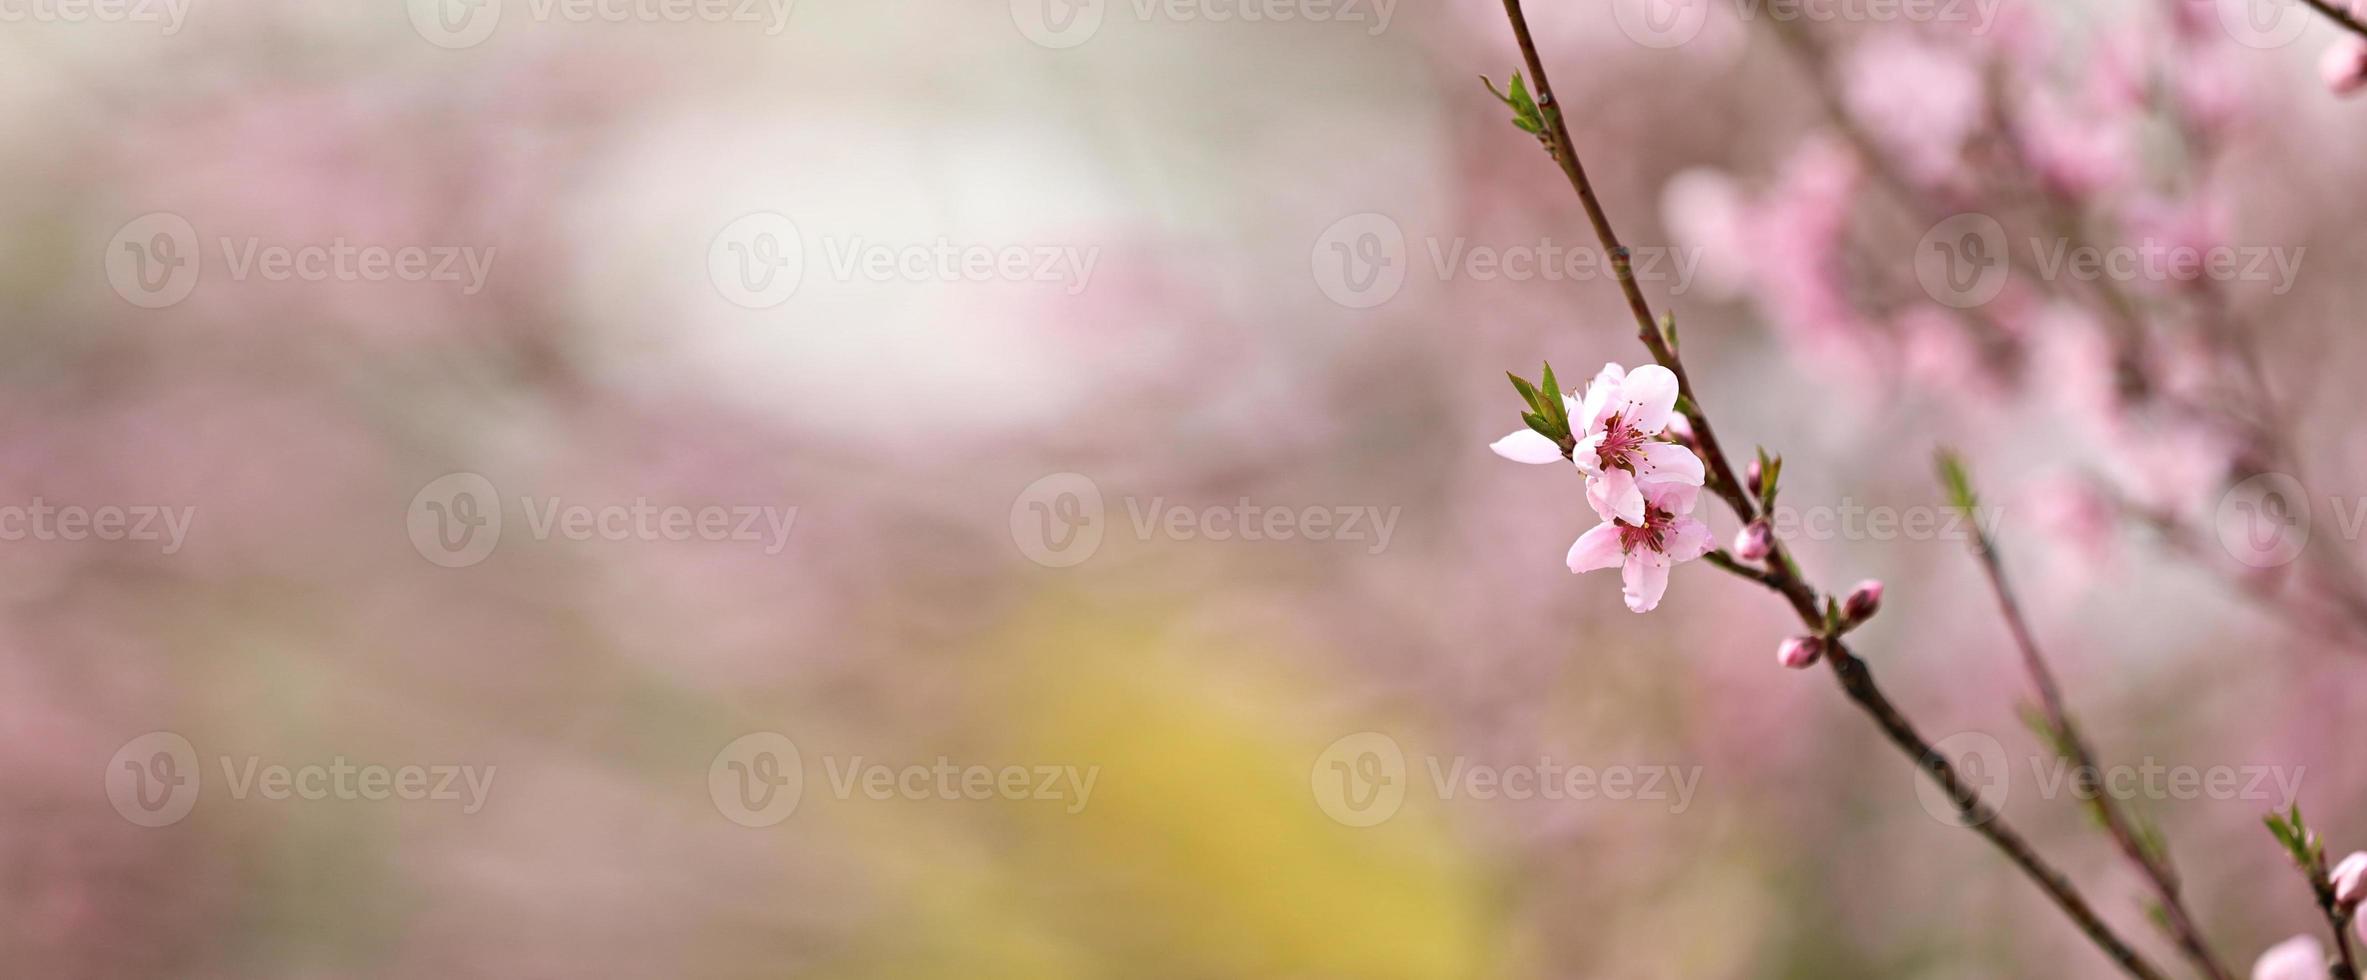 la fleur de pêche rose fleurit au printemps. de belles fleurs de pêcher se balancent dans le vent. belles fleurs de pêche rose vif en fleurs sur les branches. fermer photo